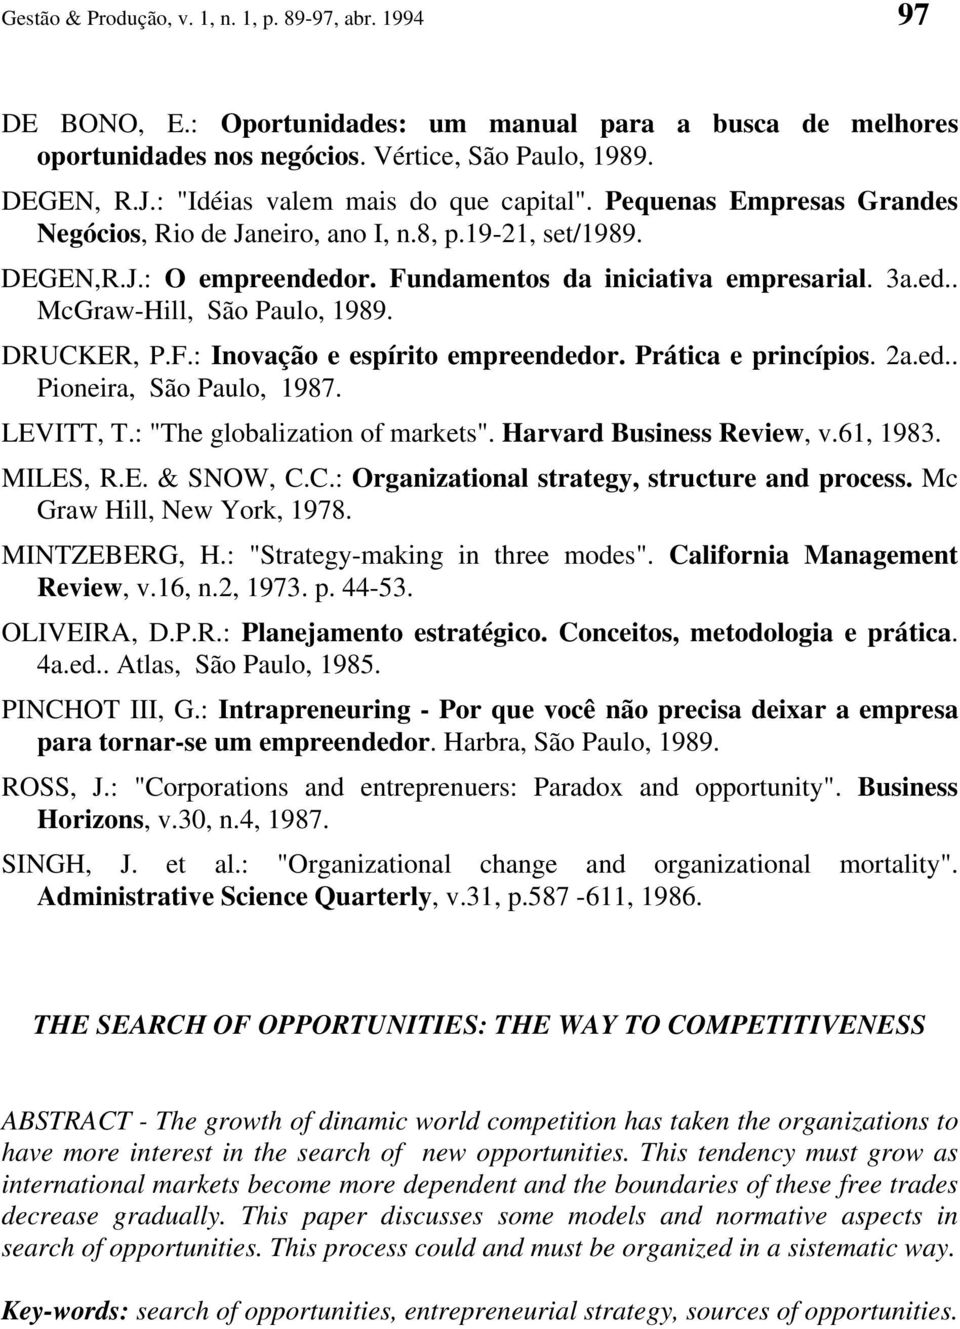 DRUCKER, P.F.: Inovação e espírito empreendedor. Prática e princípios. 2a.ed.. Pioneira, São Paulo, 1987. LEVITT, T.: "The globalization of markets". Harvard Business Review, v.61, 1983. MILES, R.E. & SNOW, C.